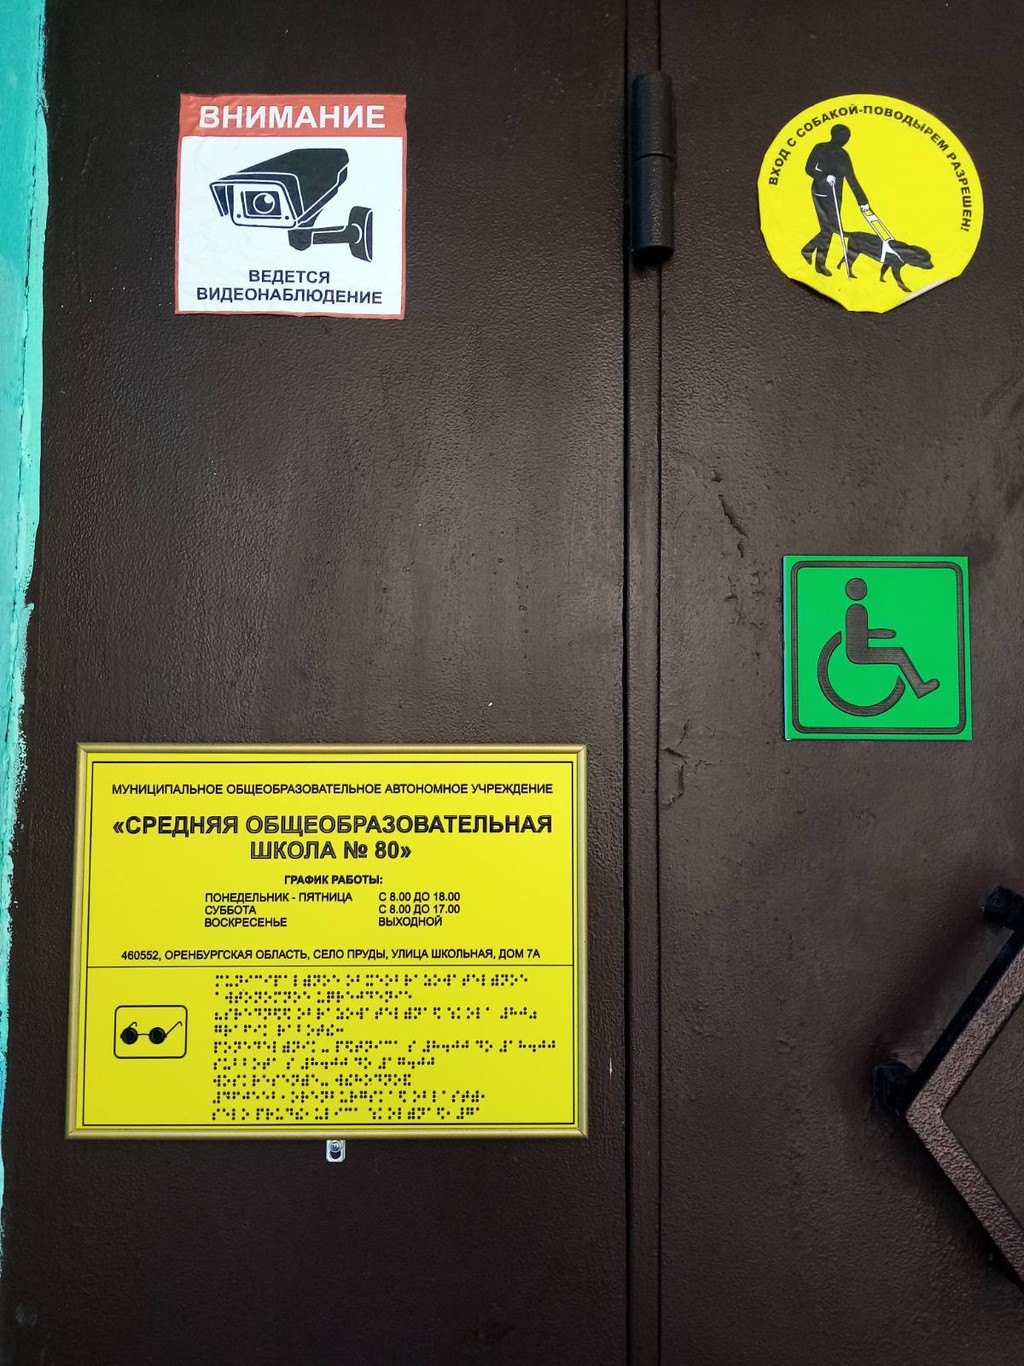 На входной двери в МОАУ &amp;quot;СОШ № 80&amp;quot; расположены тактильная вывеска, знак доступности и знак &amp;quot;Вход с собакой поводырем разрешен&amp;quot; для инвалидов и лиц с ограниченными возможностями здоровья.